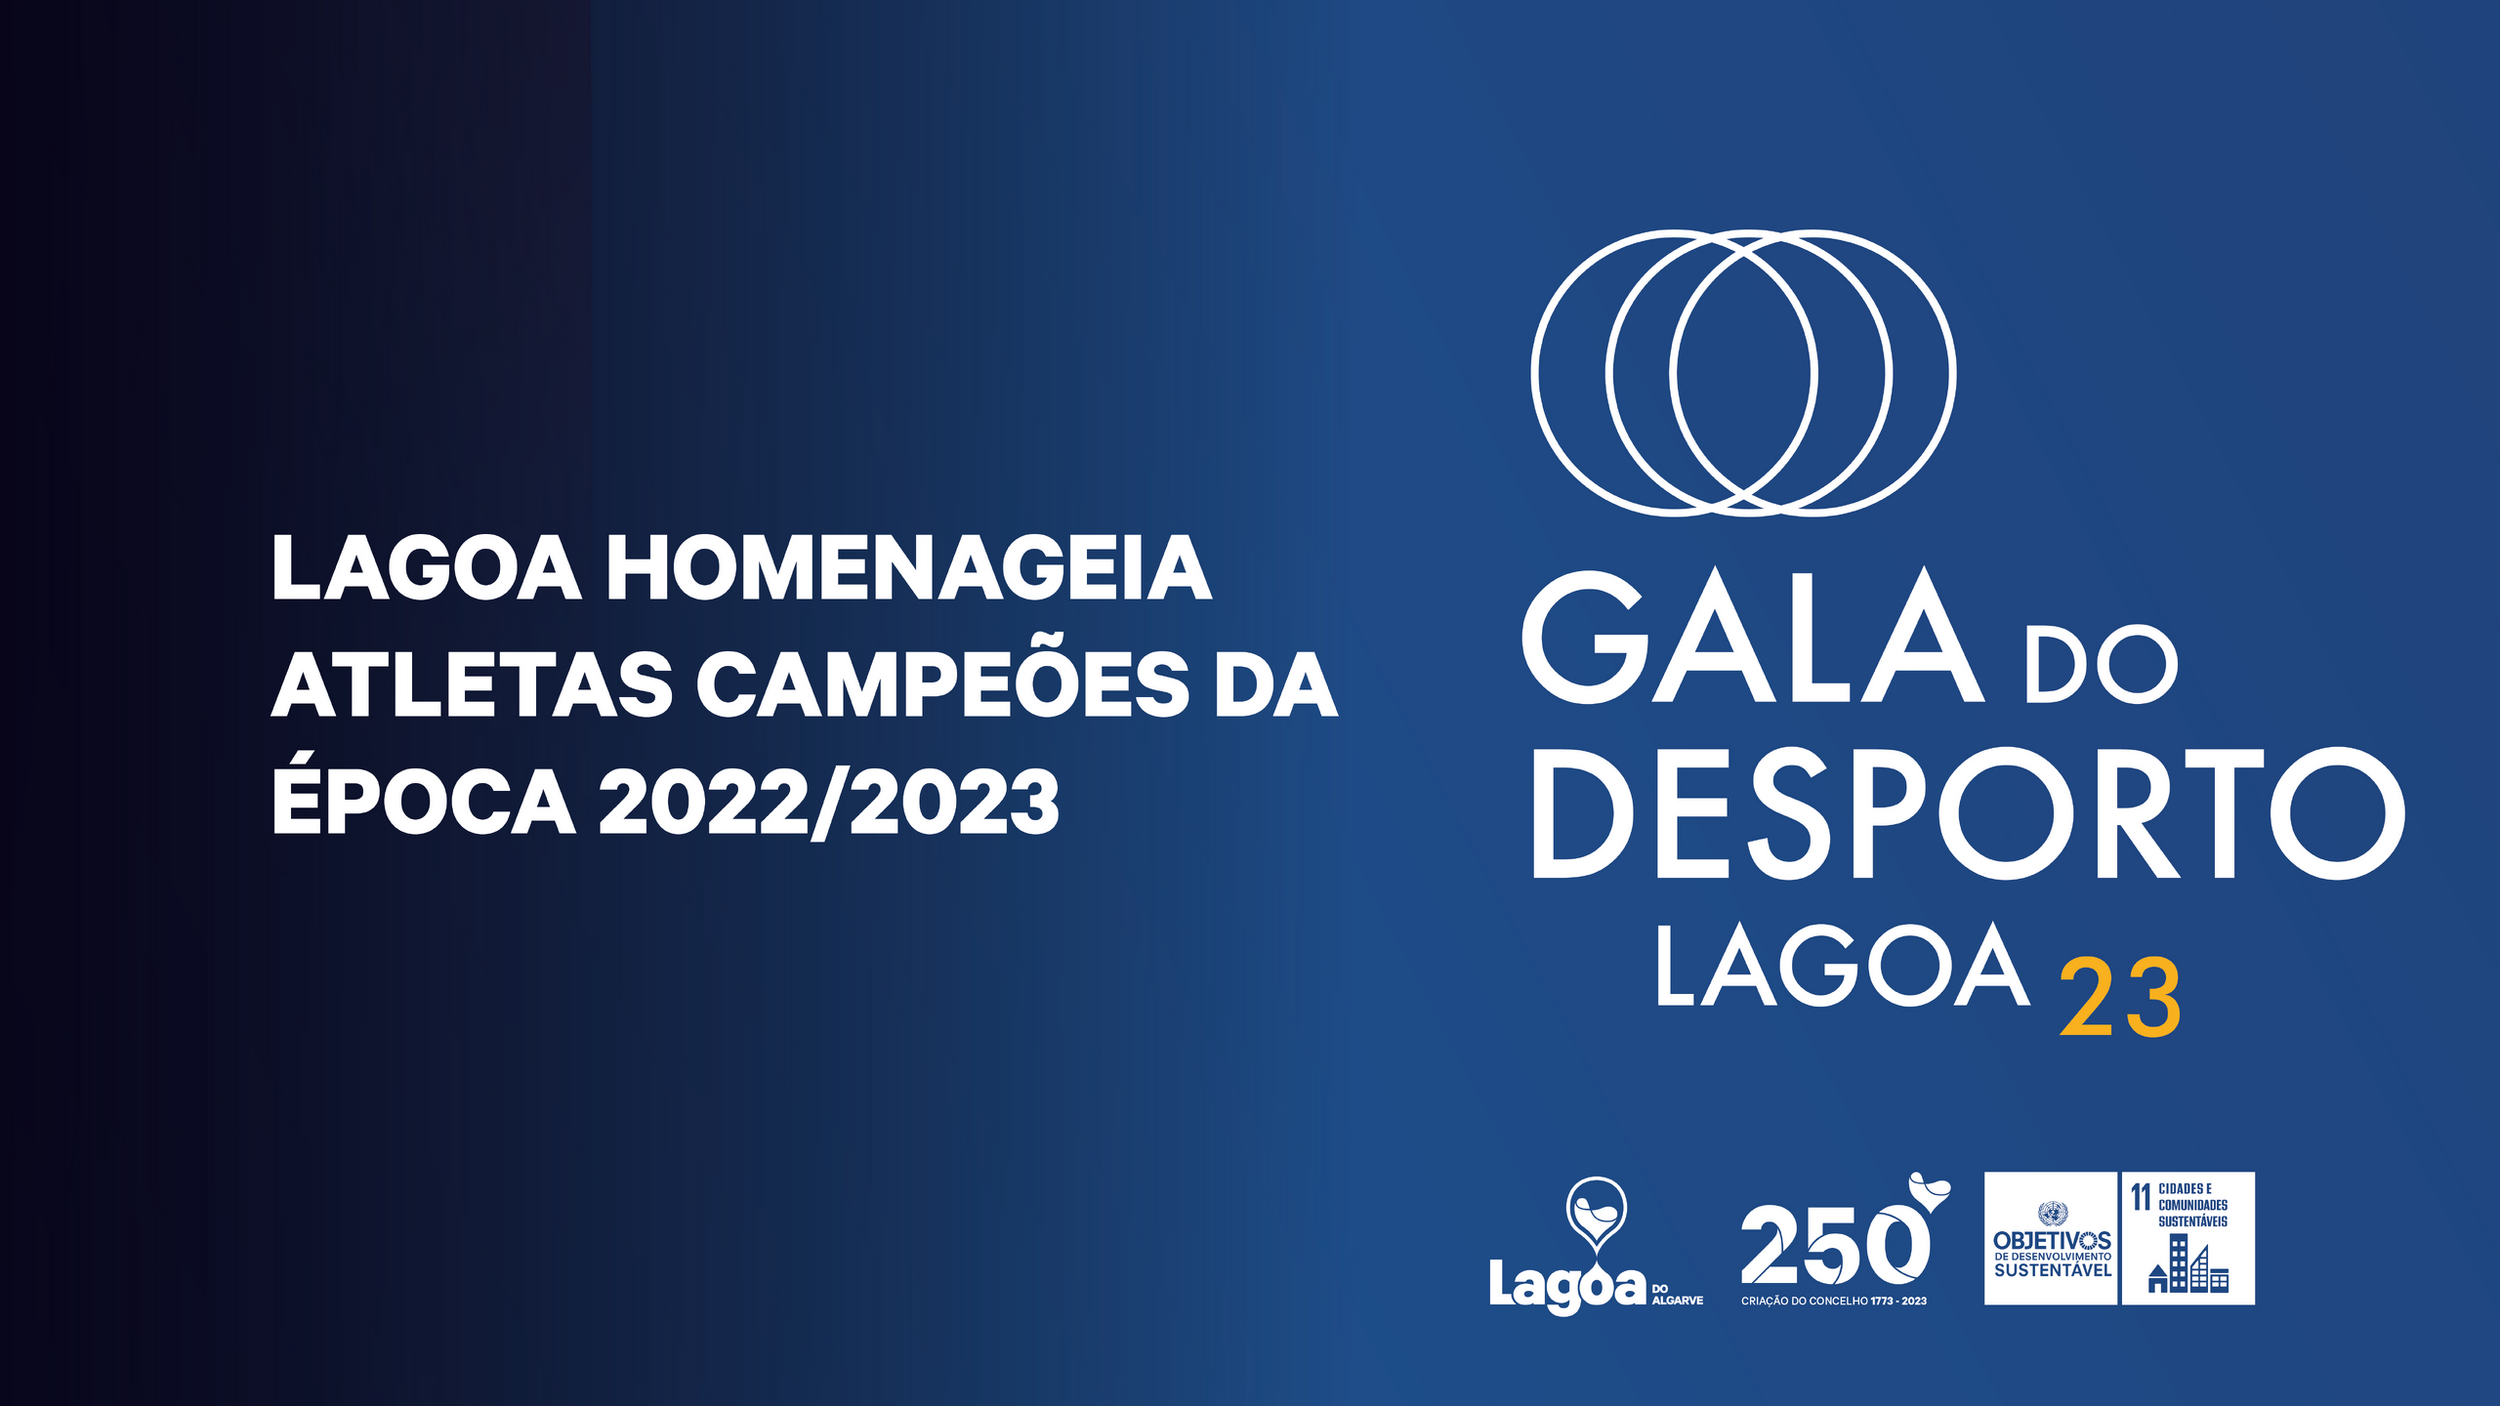 Lagoa homenageia atletas campeões da época 2022/2023